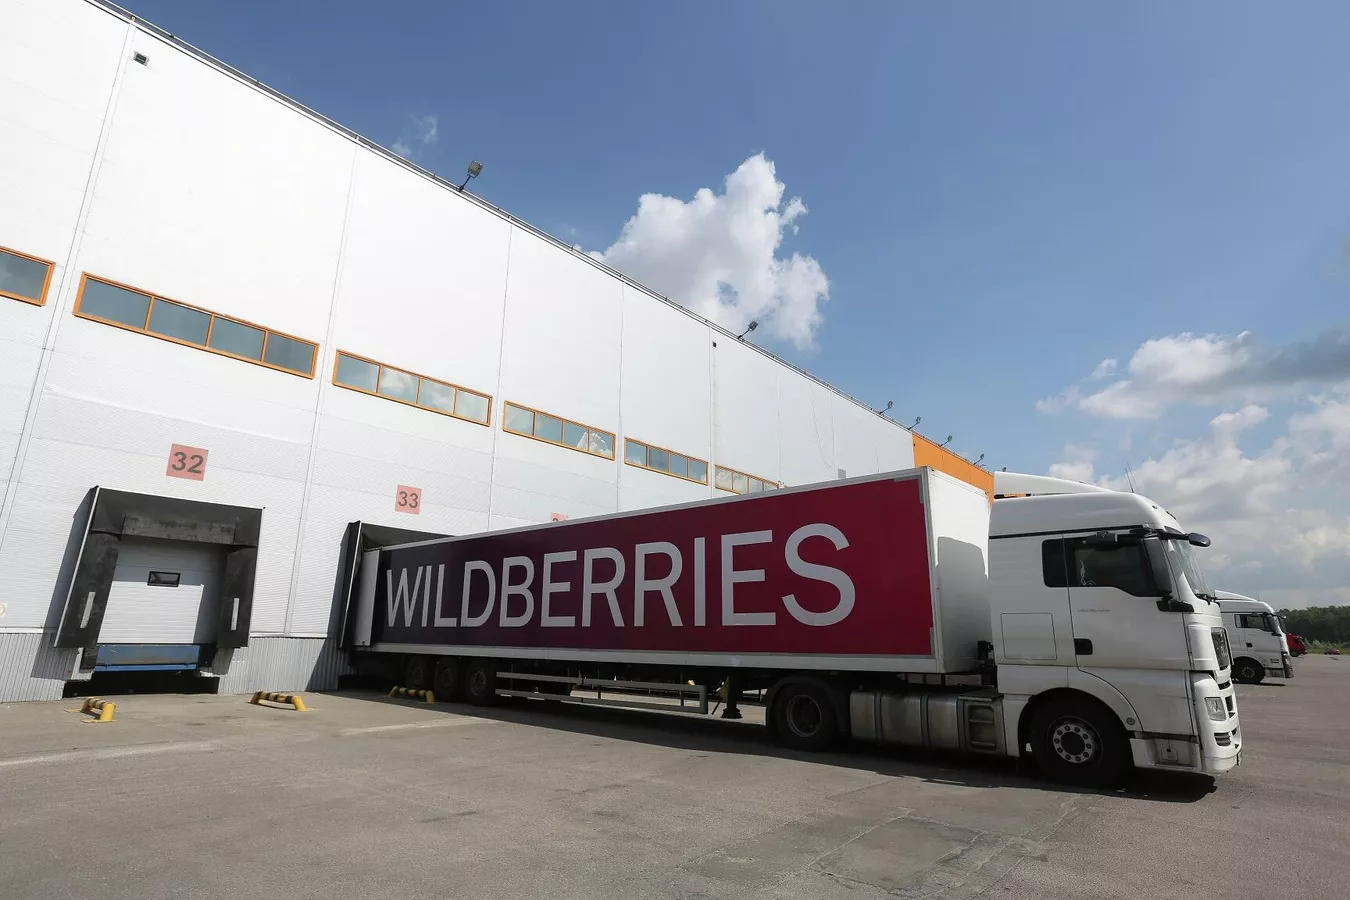 Wildberries-ում պարզաբանել են պատվիրված ապրանքներից հրաժարվելու դեպքում զանգվածային տուգանքների ներմուծման մասին լուրերը